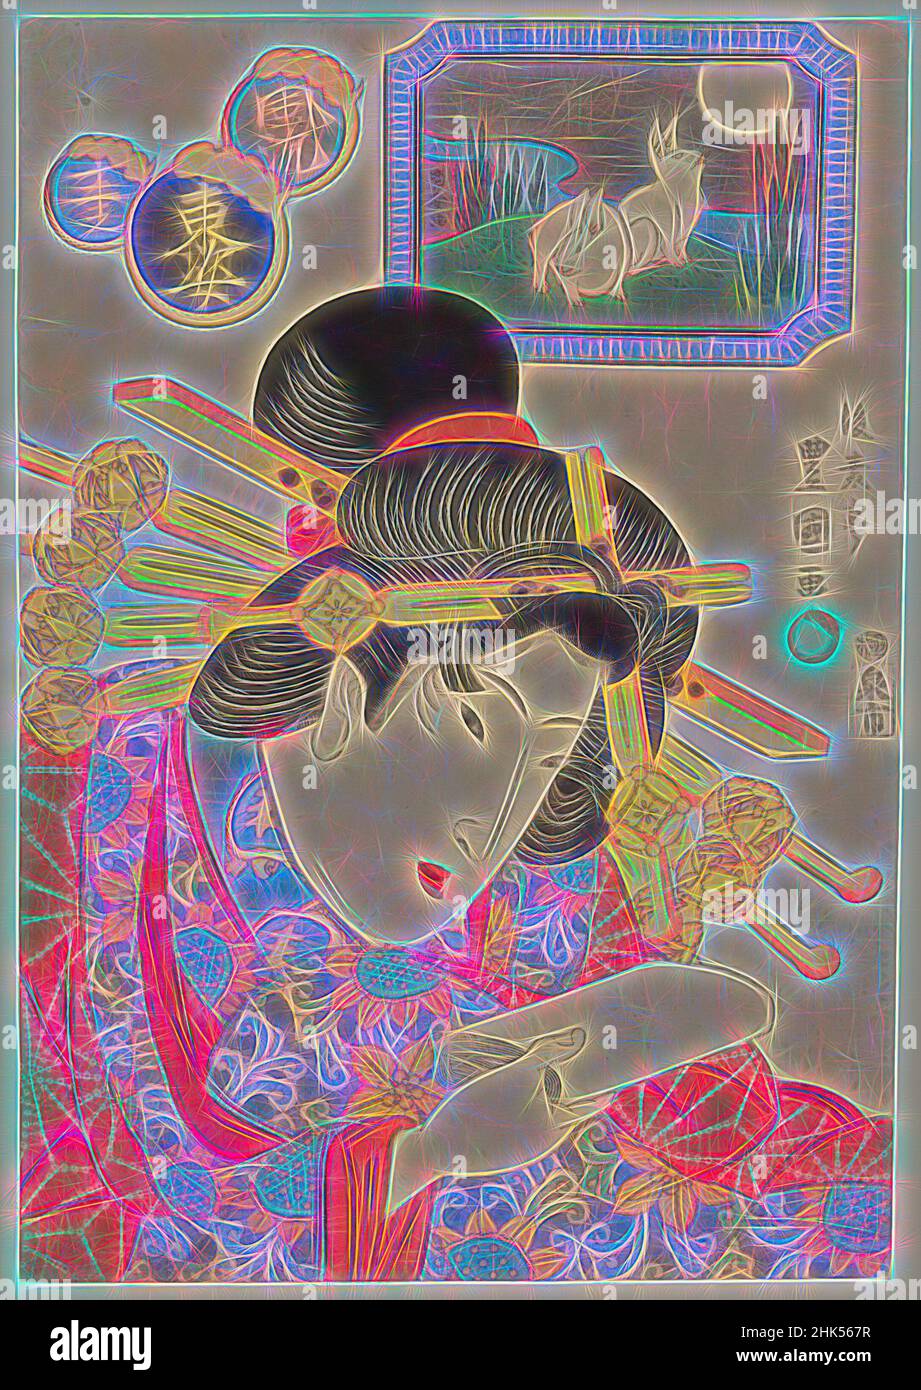 Inspiré par Hare, de la série Twelve Forms of the fashion Eastern Zodiac, Gosotei Toyokuni II, japonais, 1802-1835, imprimé en bois de couleur sur papier, Japon, fin 1820s, période Edo, 14 1/8 x 9 5/8 po, 35,9 x 24,4 cm, Bijin, Bijinga, période Edo, Geisha, Coiffure, Japon, japonais, kimono, réimaginé par Artotop. L'art classique réinventé avec une touche moderne. Conception de lumière chaleureuse et gaie, de luminosité et de rayonnement de lumière. La photographie s'inspire du surréalisme et du futurisme, embrassant l'énergie dynamique de la technologie moderne, du mouvement, de la vitesse et révolutionne la culture Banque D'Images